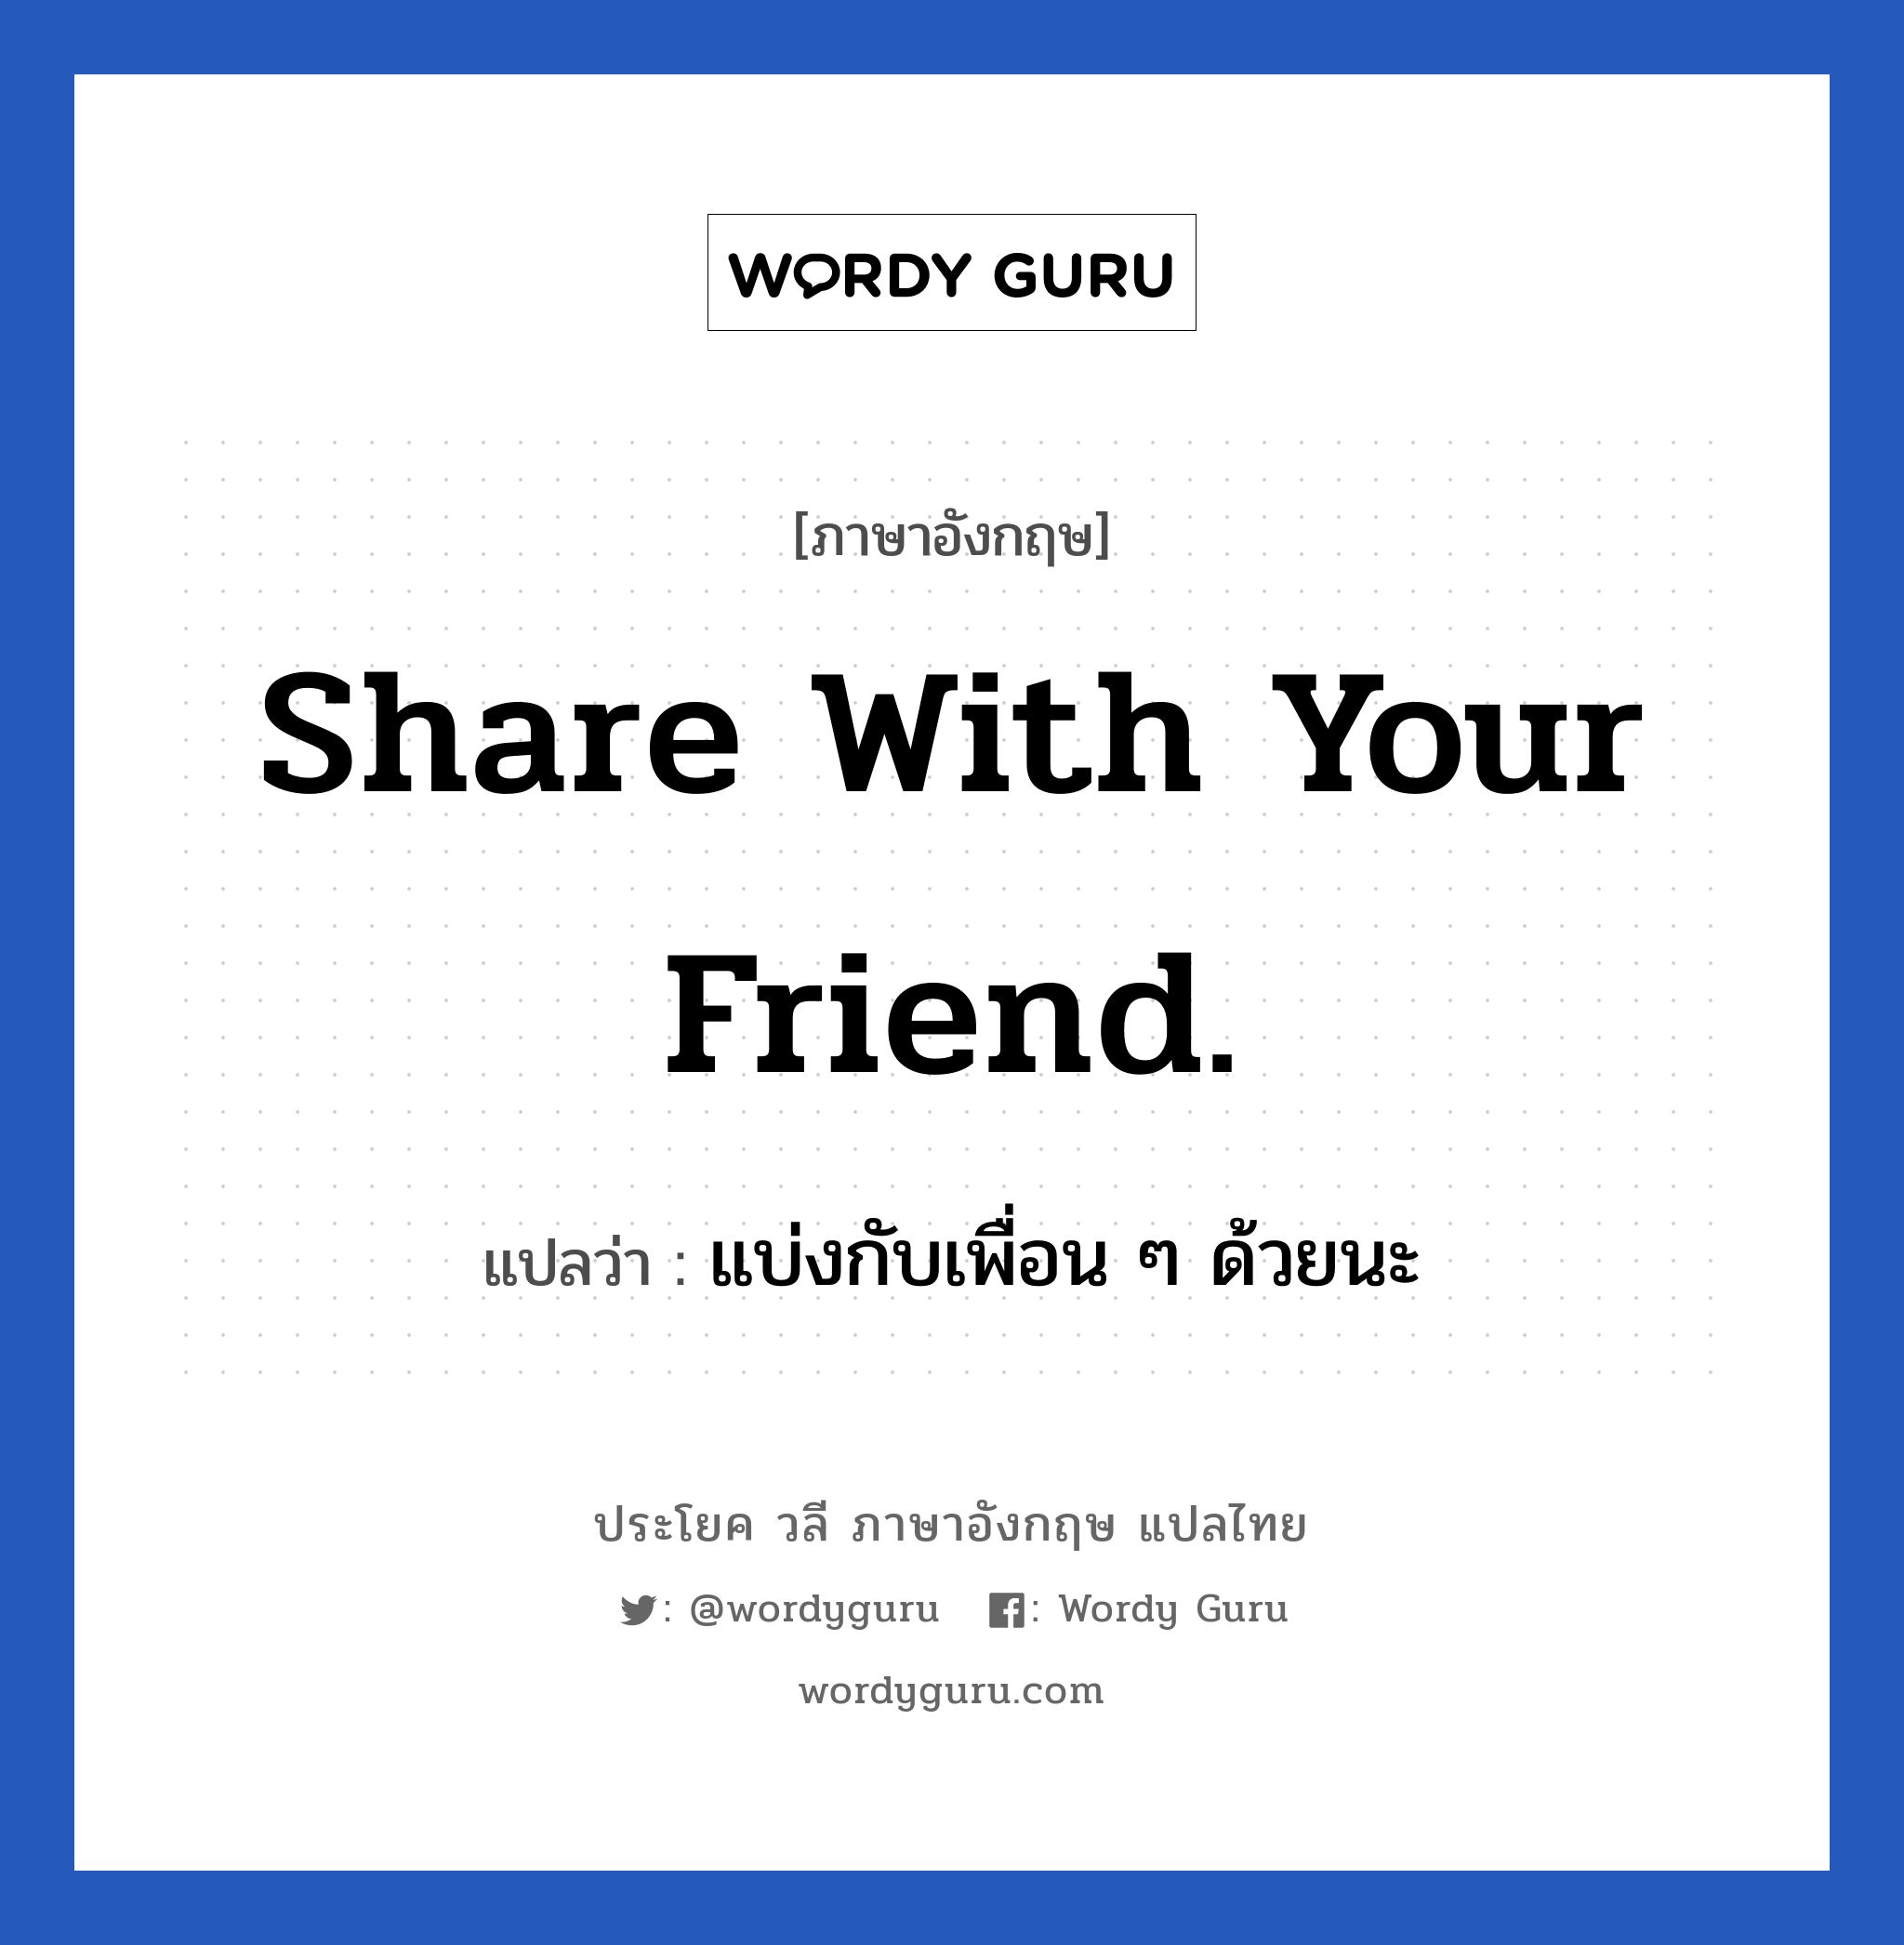 share with your friend. แปลว่า?, วลีภาษาอังกฤษ share with your friend. แปลว่า แบ่งกับเพื่อน ๆ ด้วยนะ